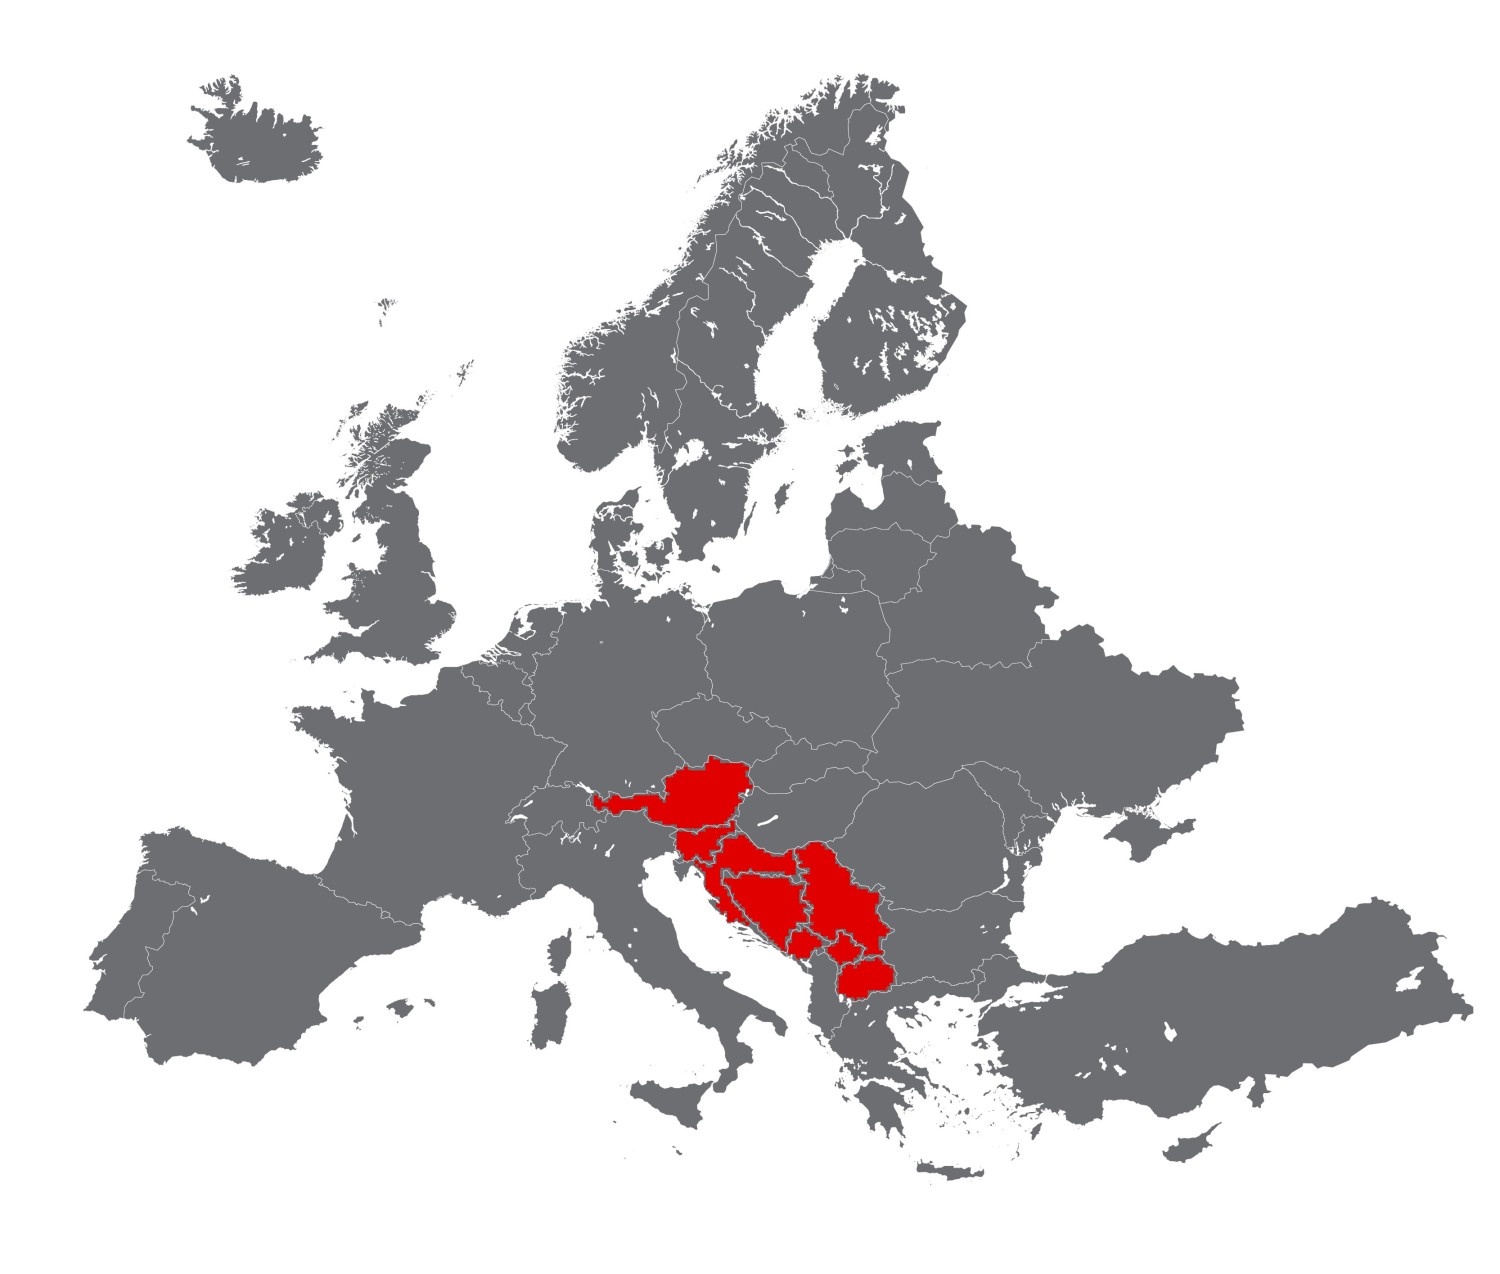 Europakarte fuer Afcona v2